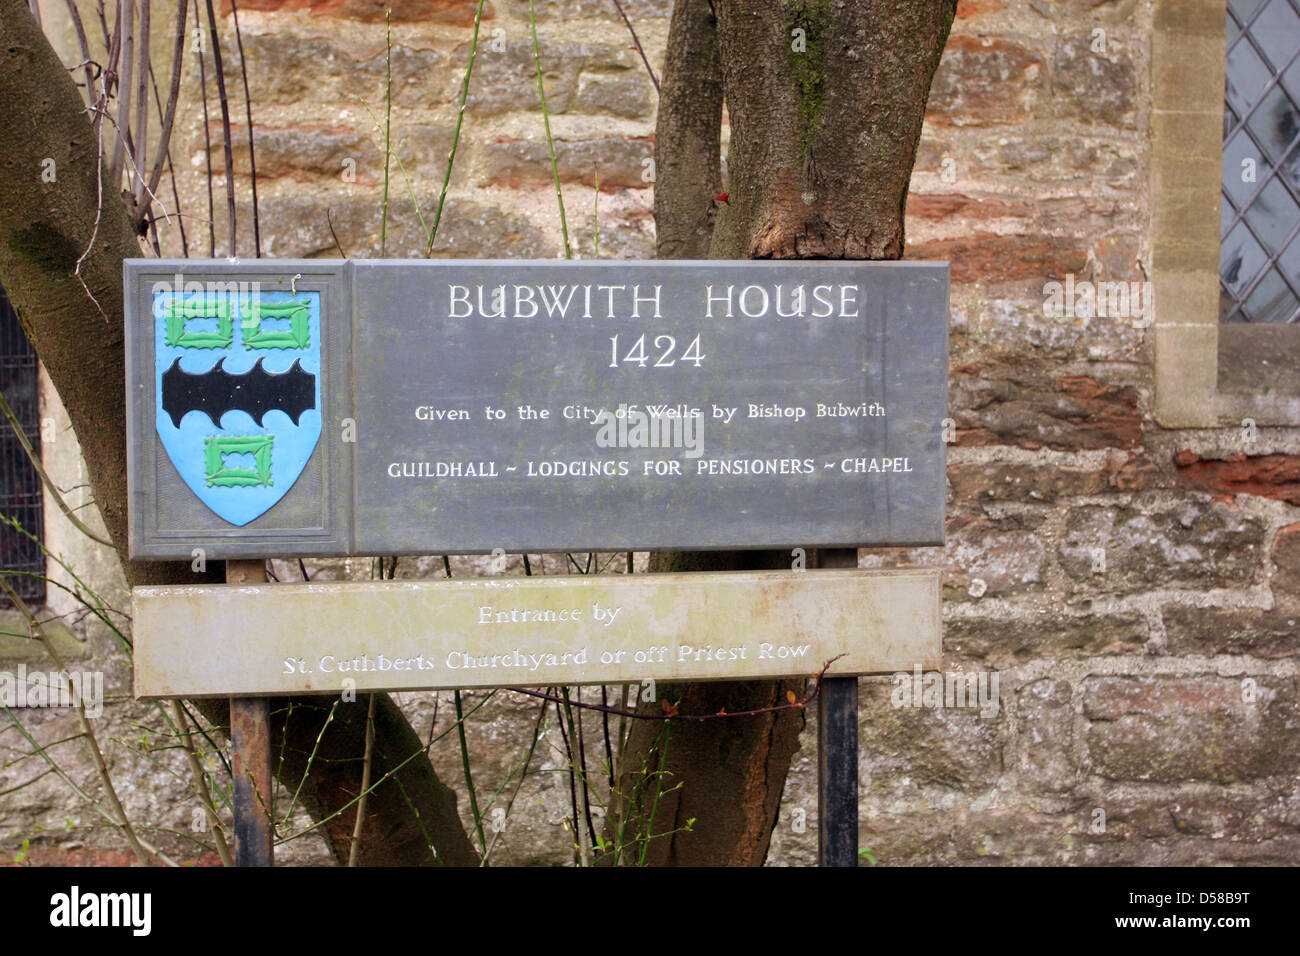 Anmeldung für Bubwith Haus in Wells, Somerset, März 2013 Stockfoto